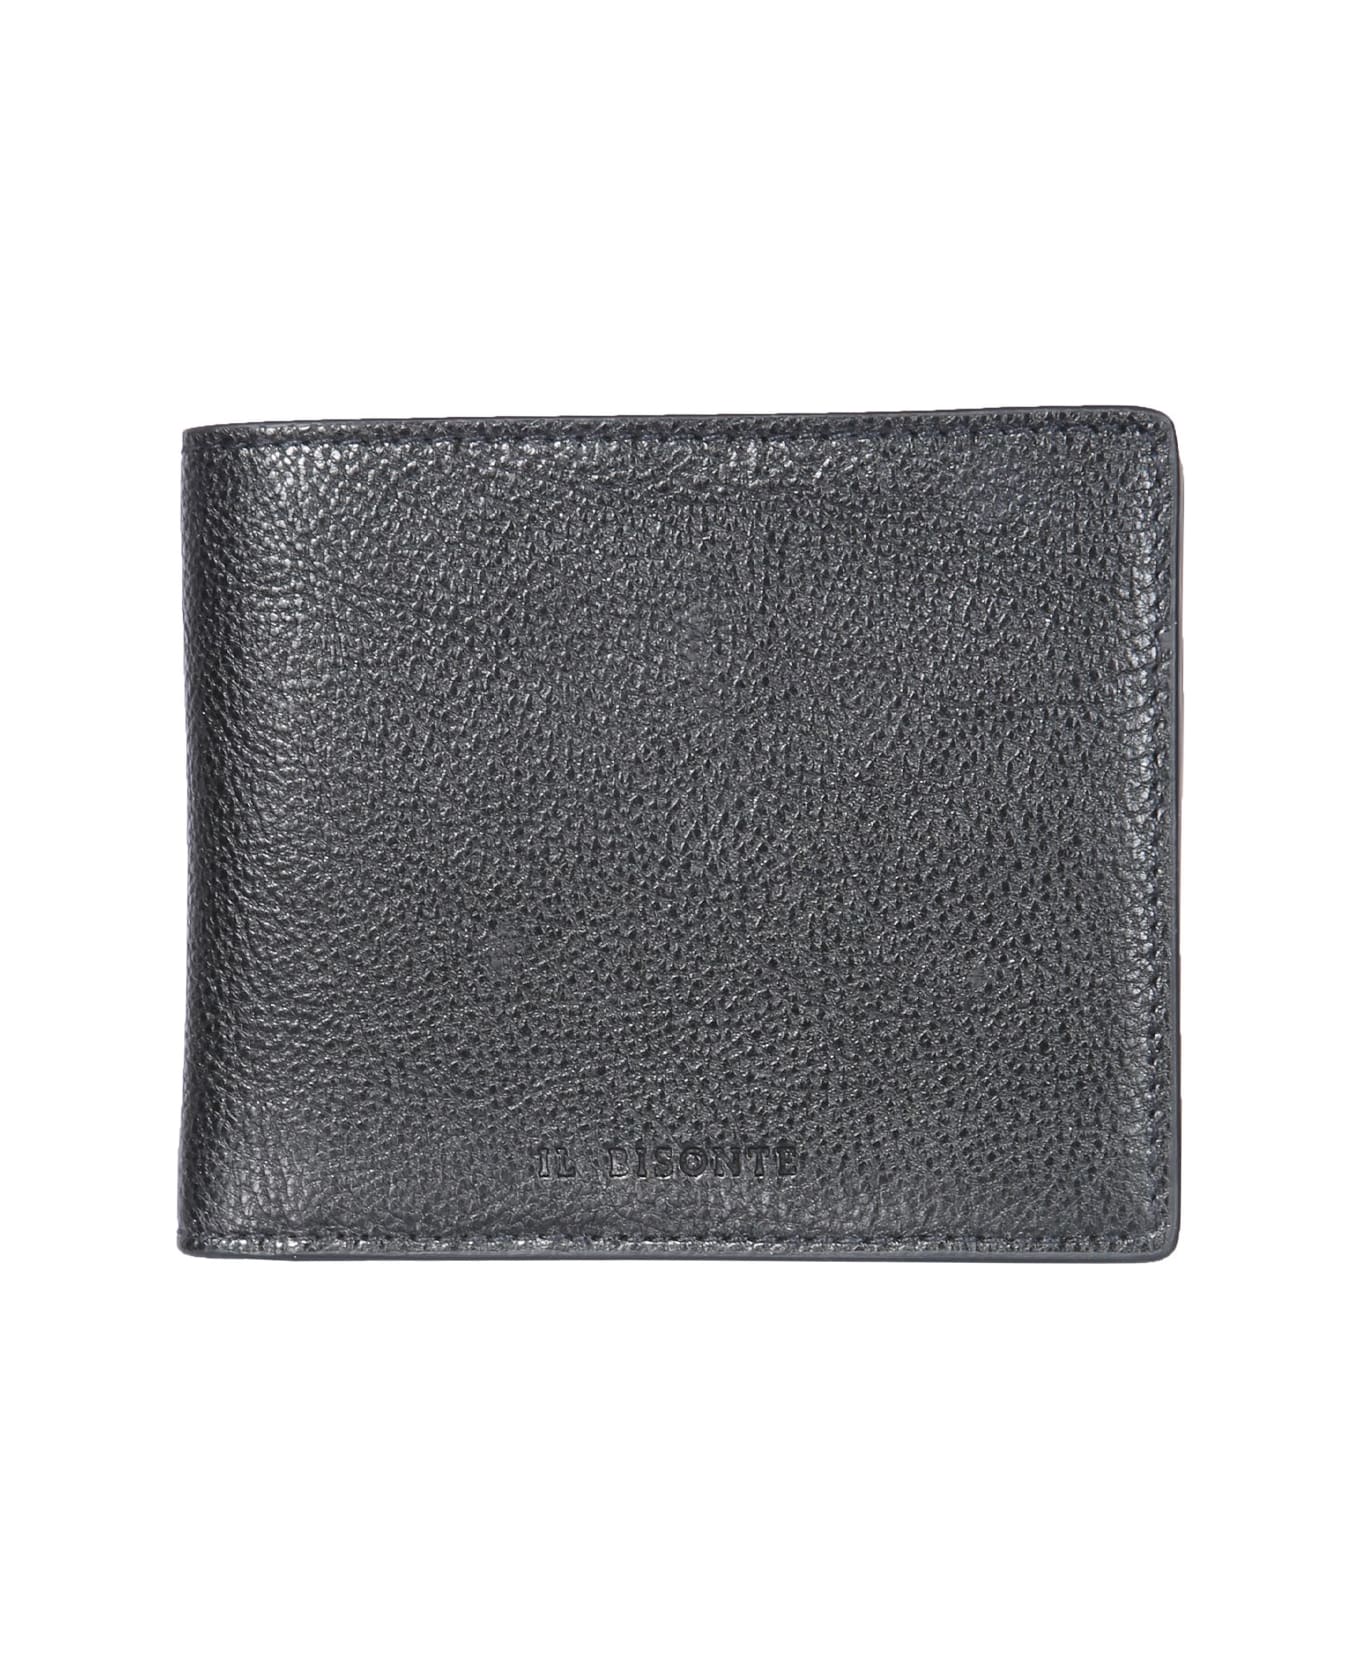 Il Bisonte Bifold Wallet With Logo - NERO